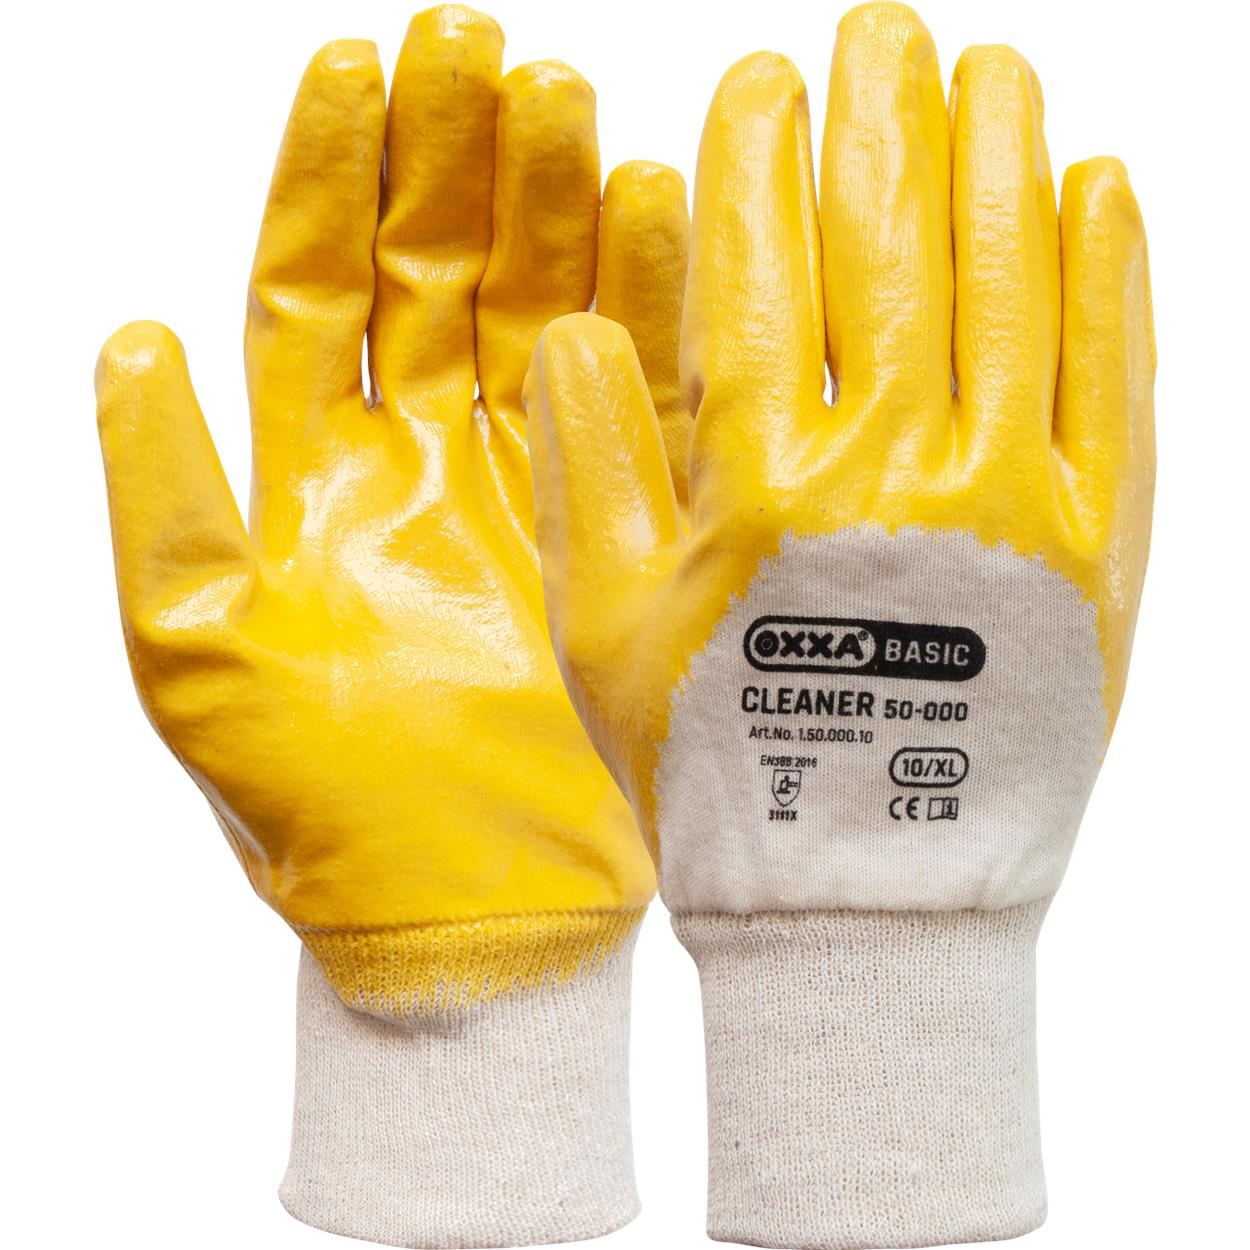 Oxxa Cleaner 50-500 nbr handschoen nitril coating